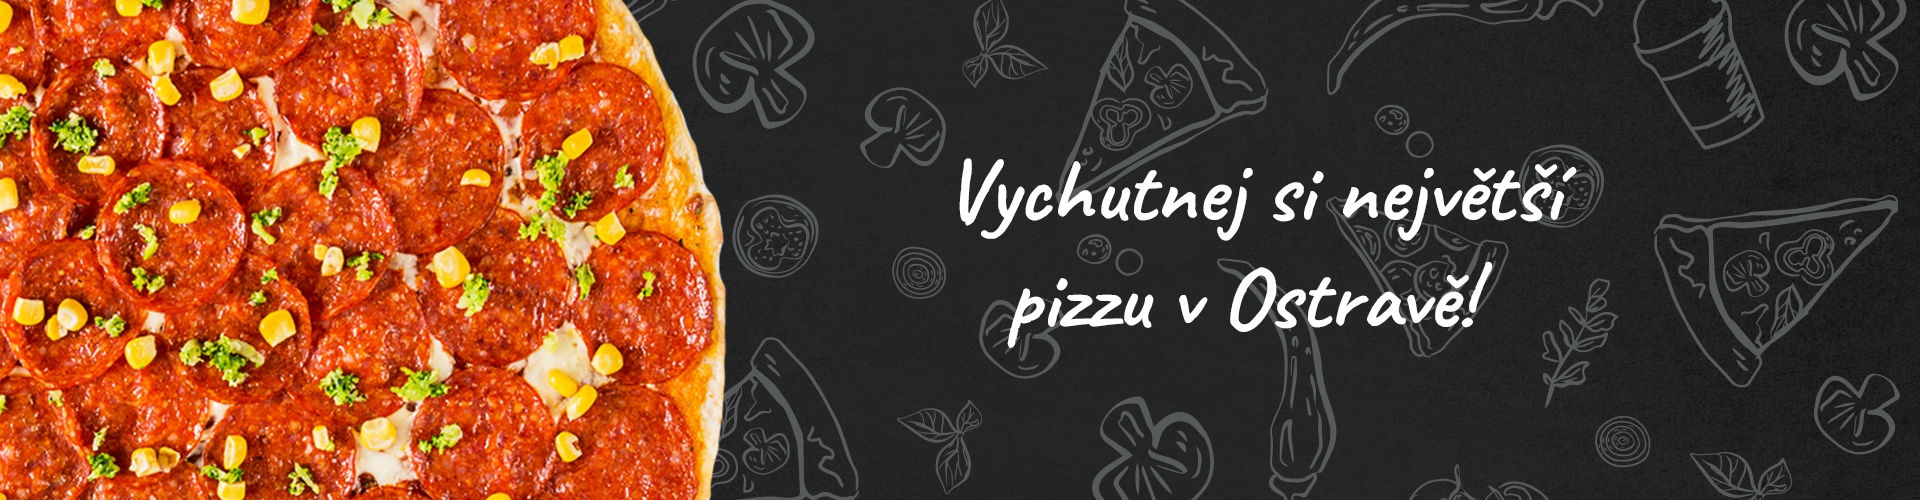 Vychutnej si největší pizzu v Ostravě!